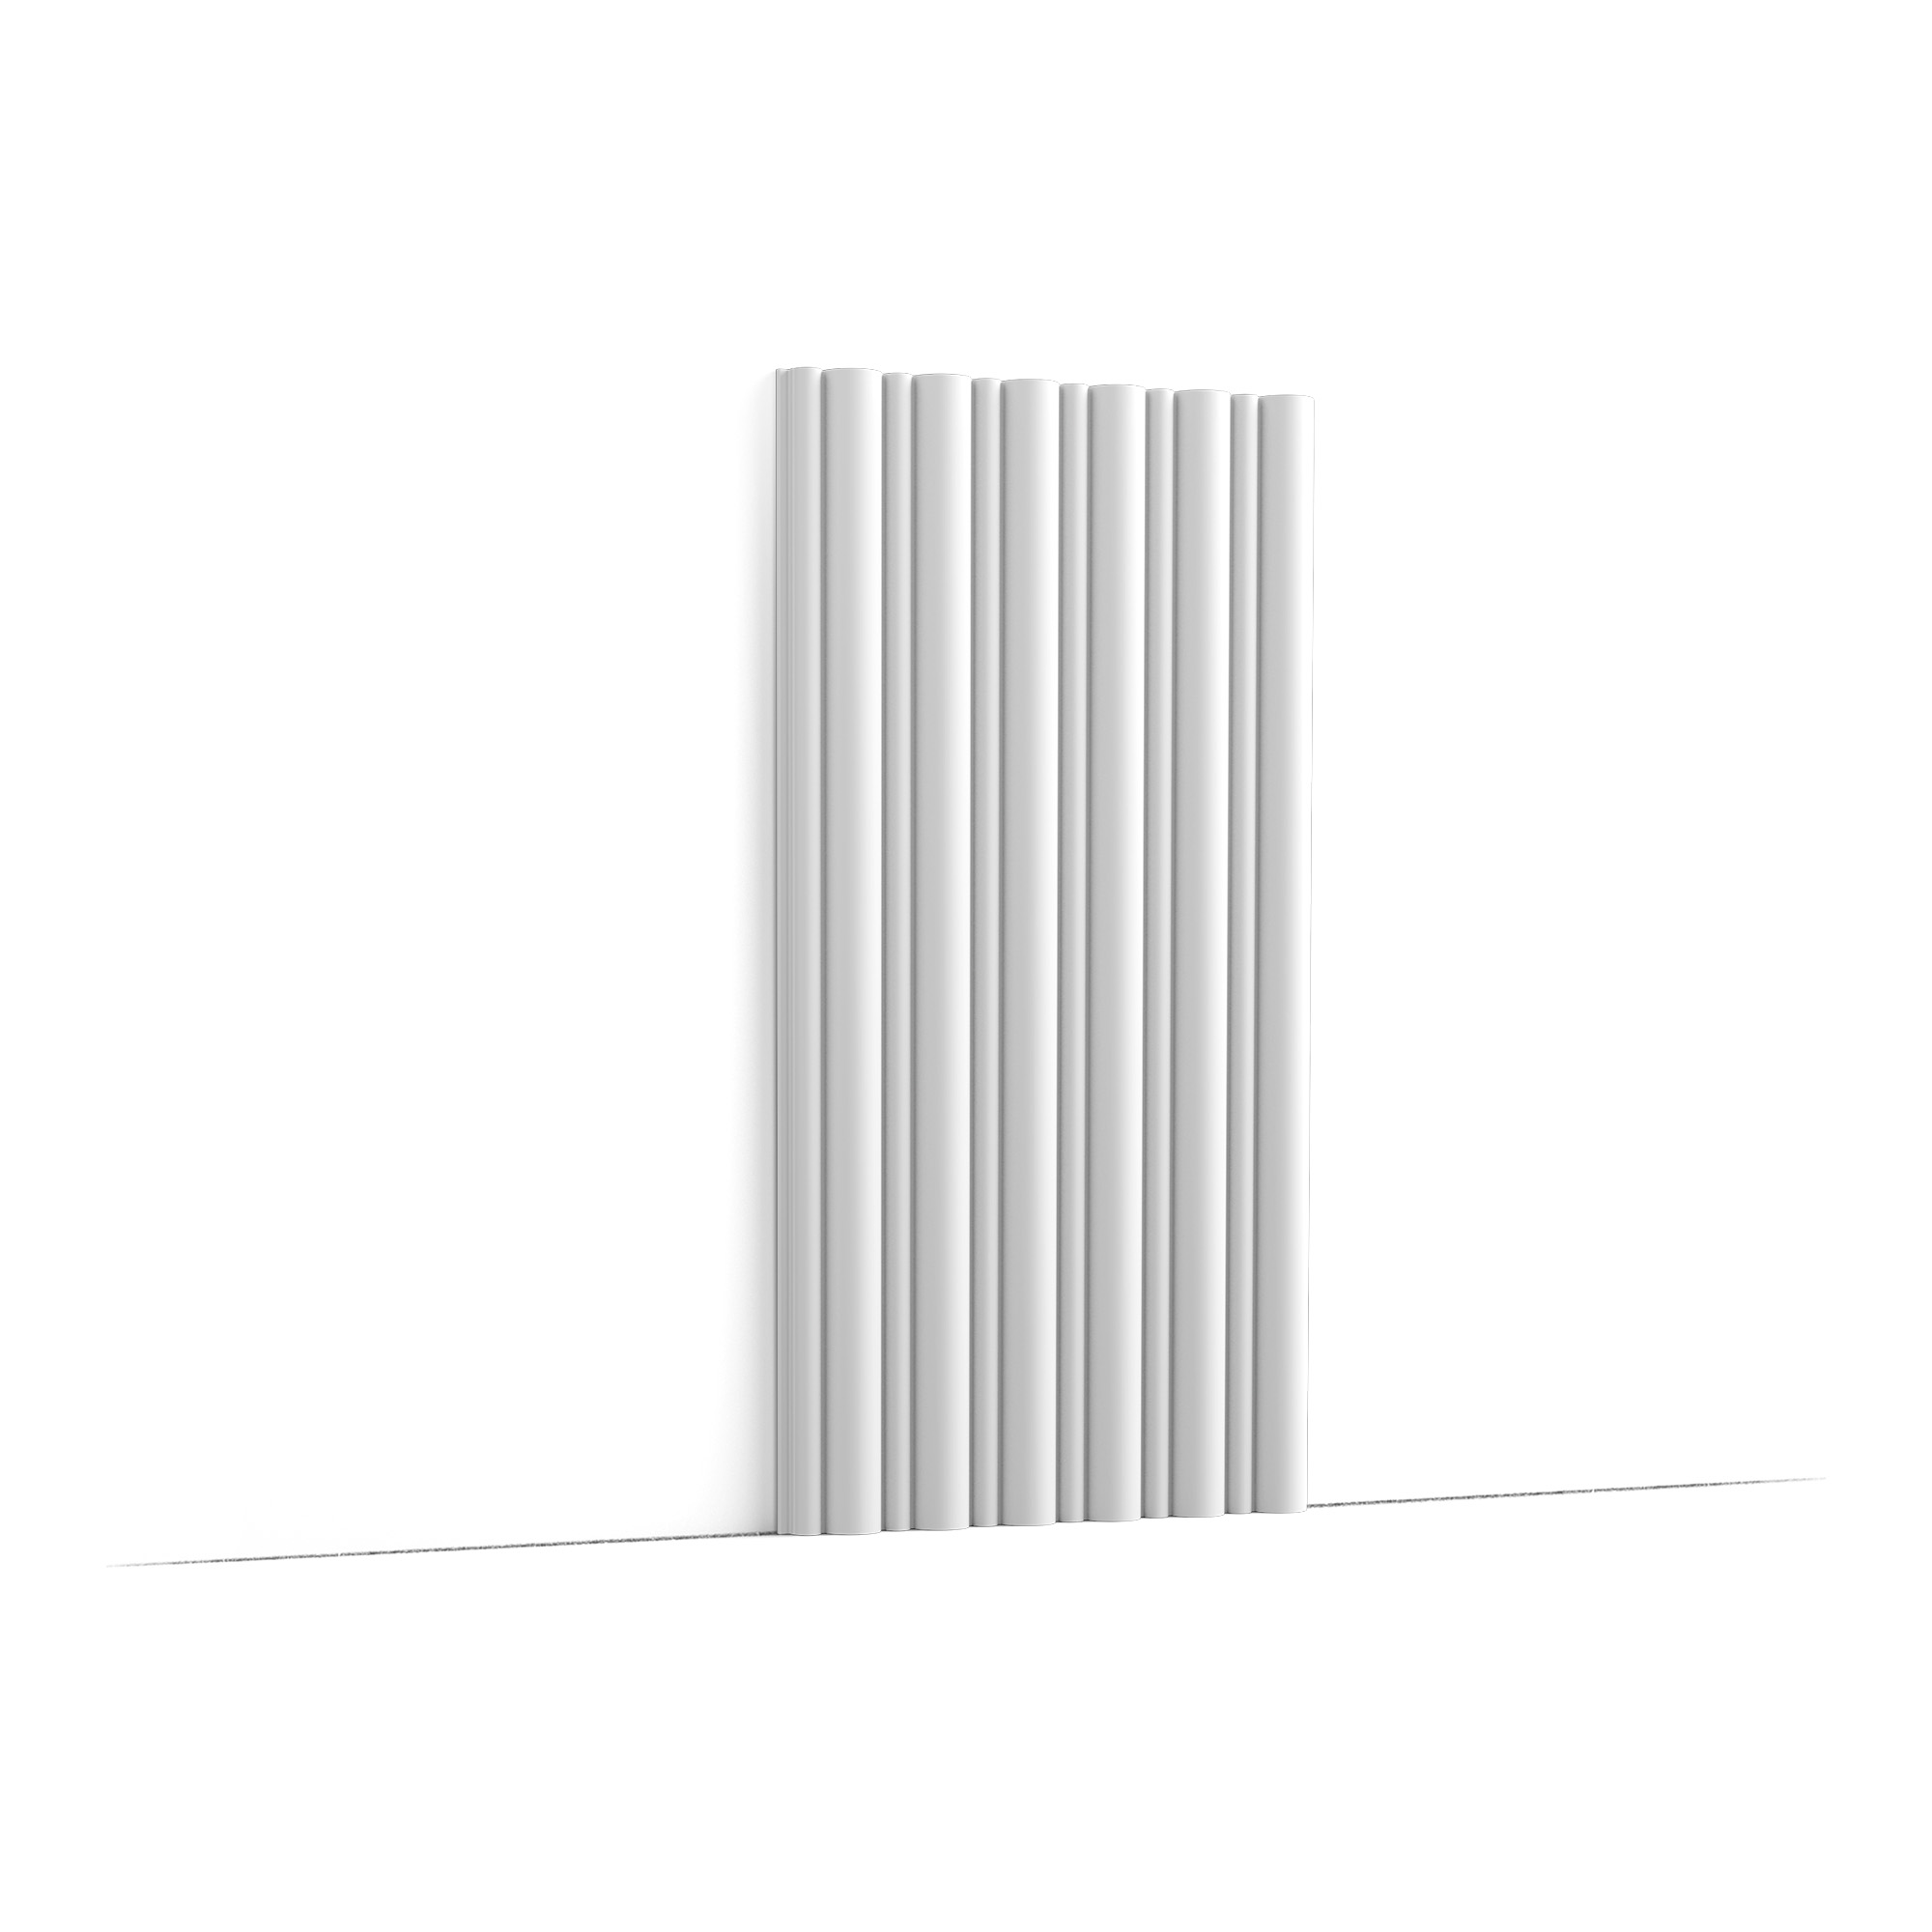 3D Flute Wall Panel 6-1/2" feet long